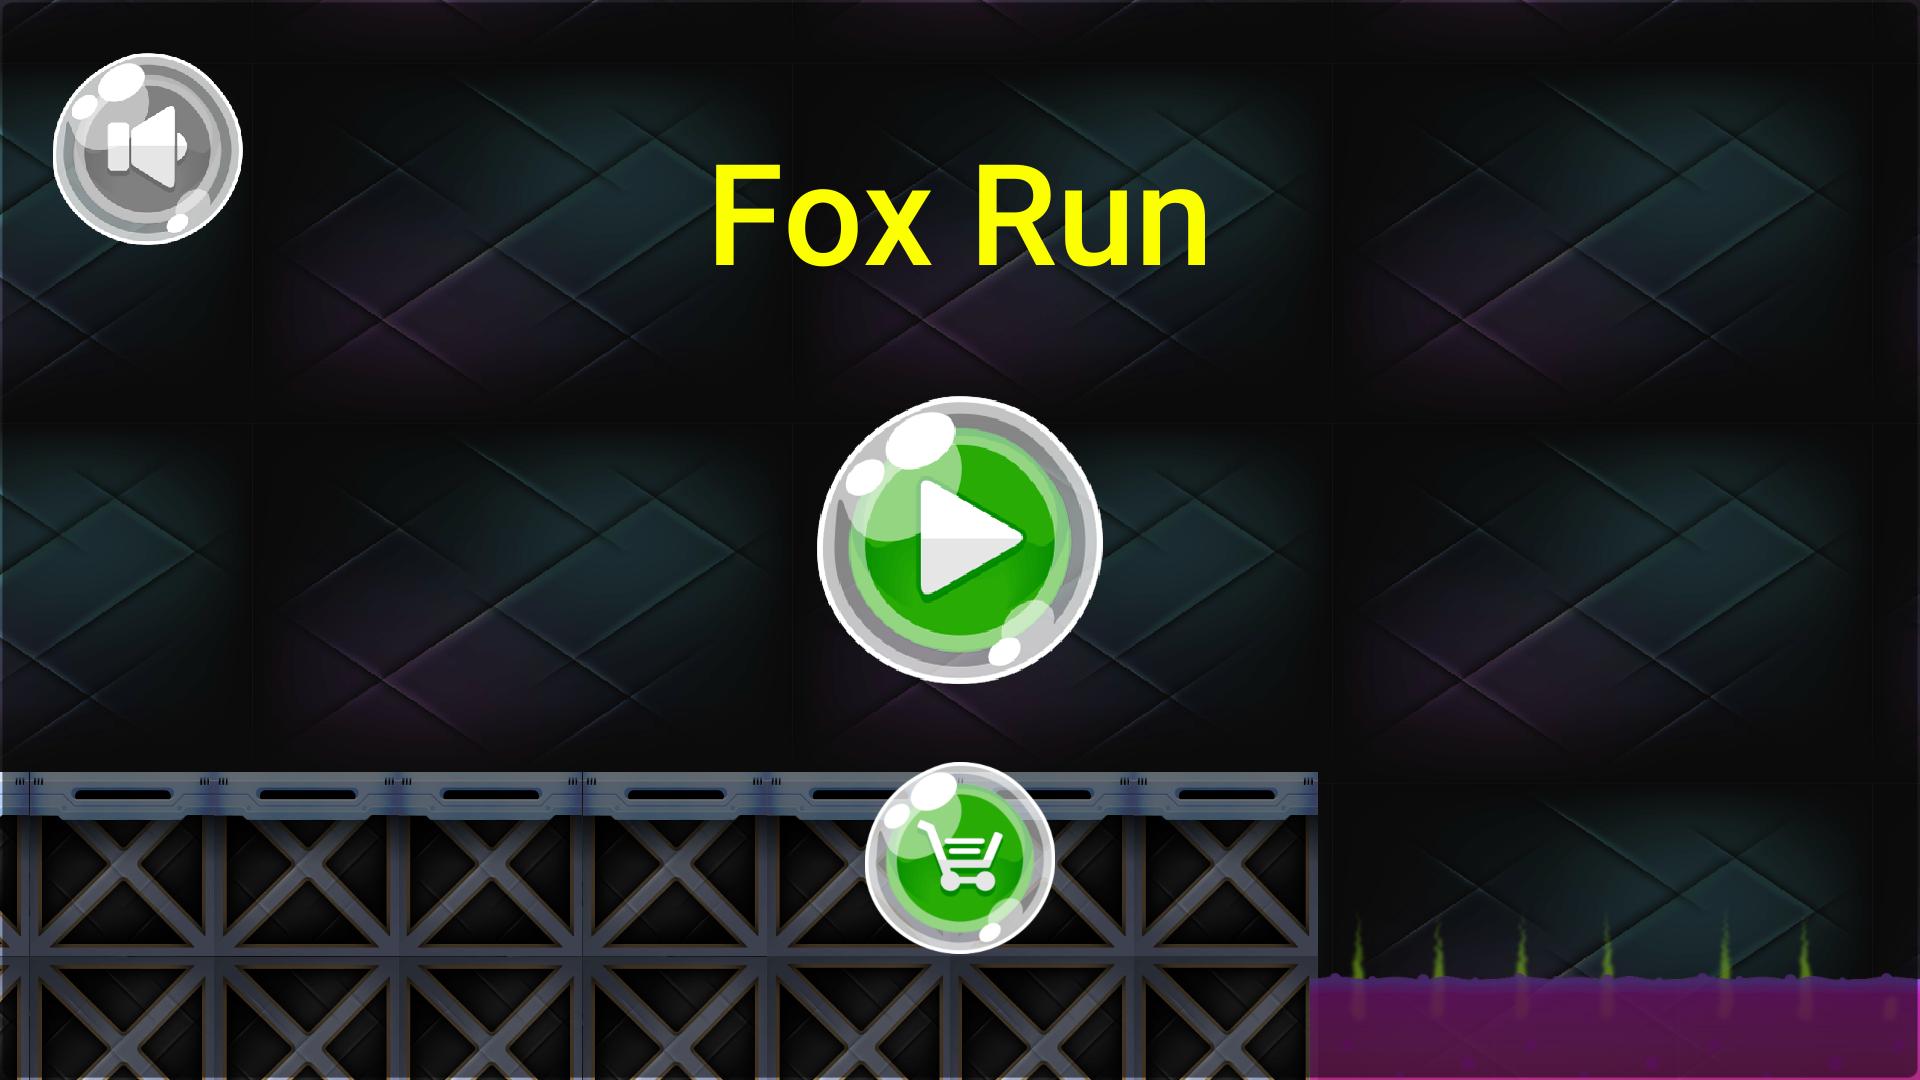 Fox android. Fox Run game.